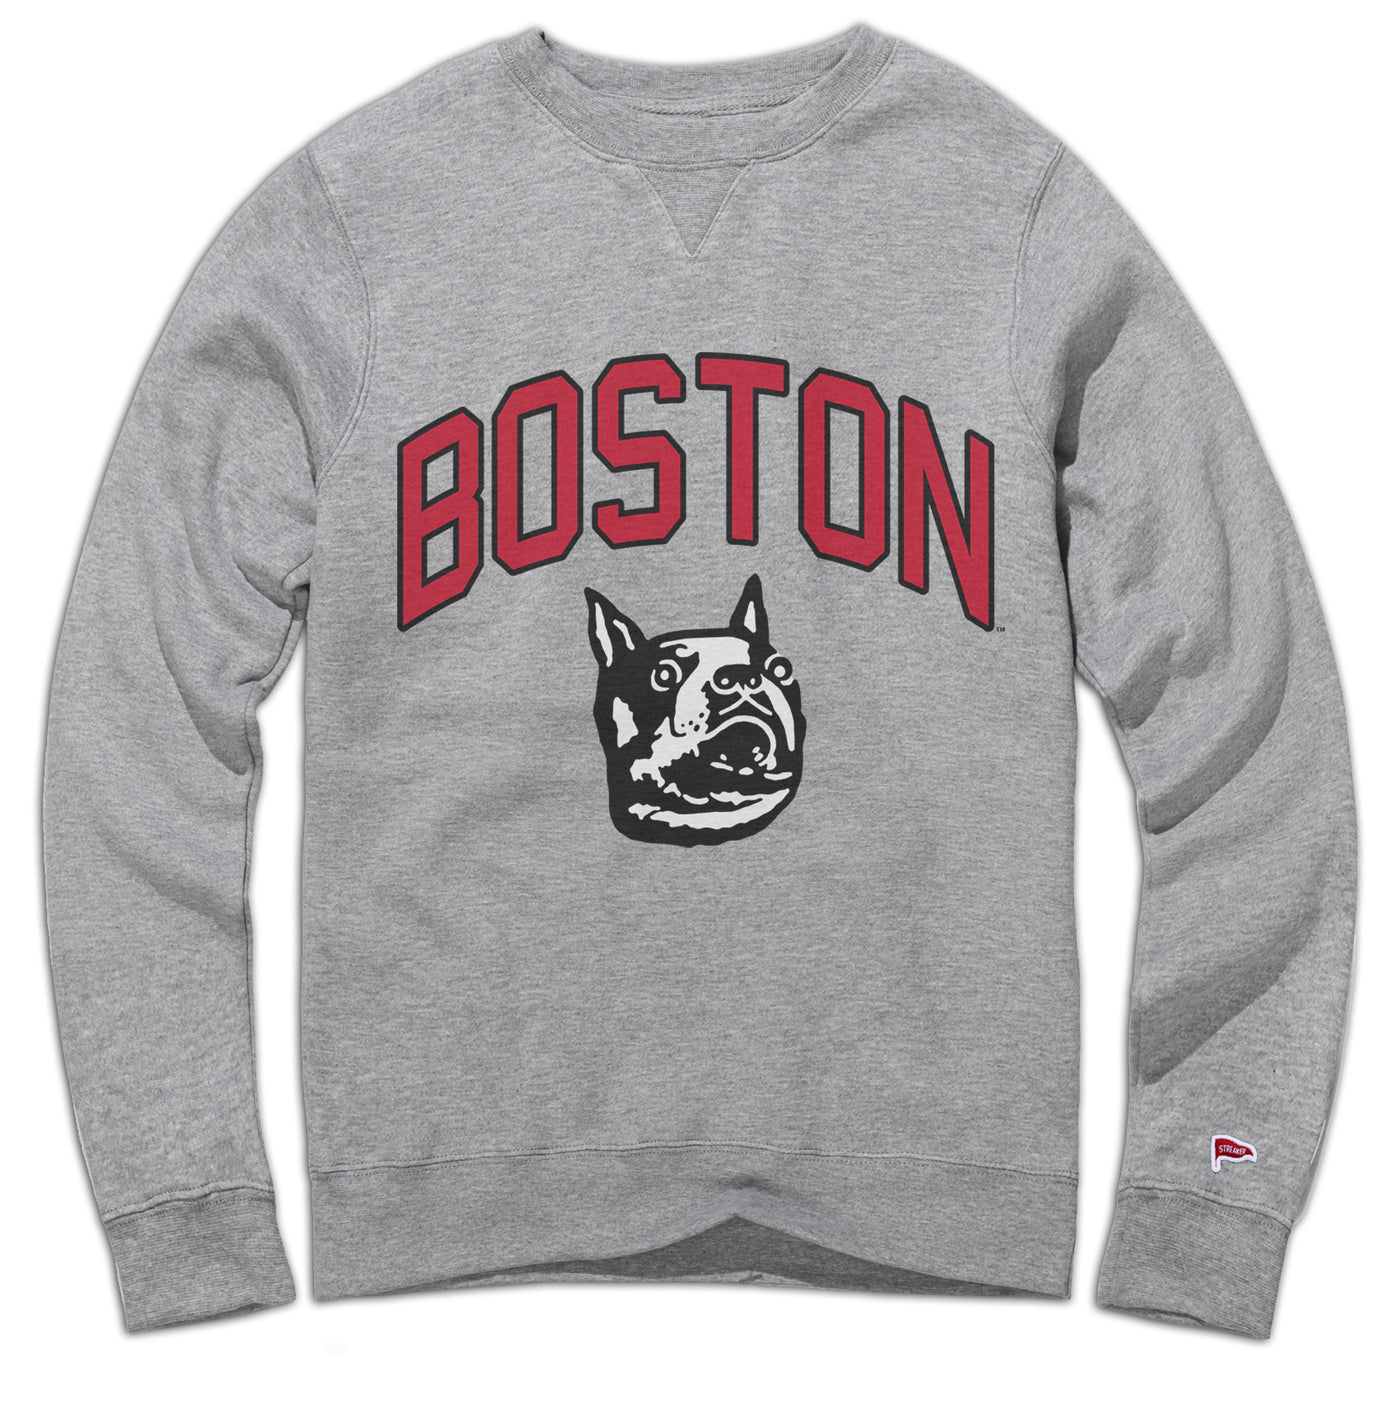 Boston University Vintage Hockey Sweatshirt - Streaker Sports